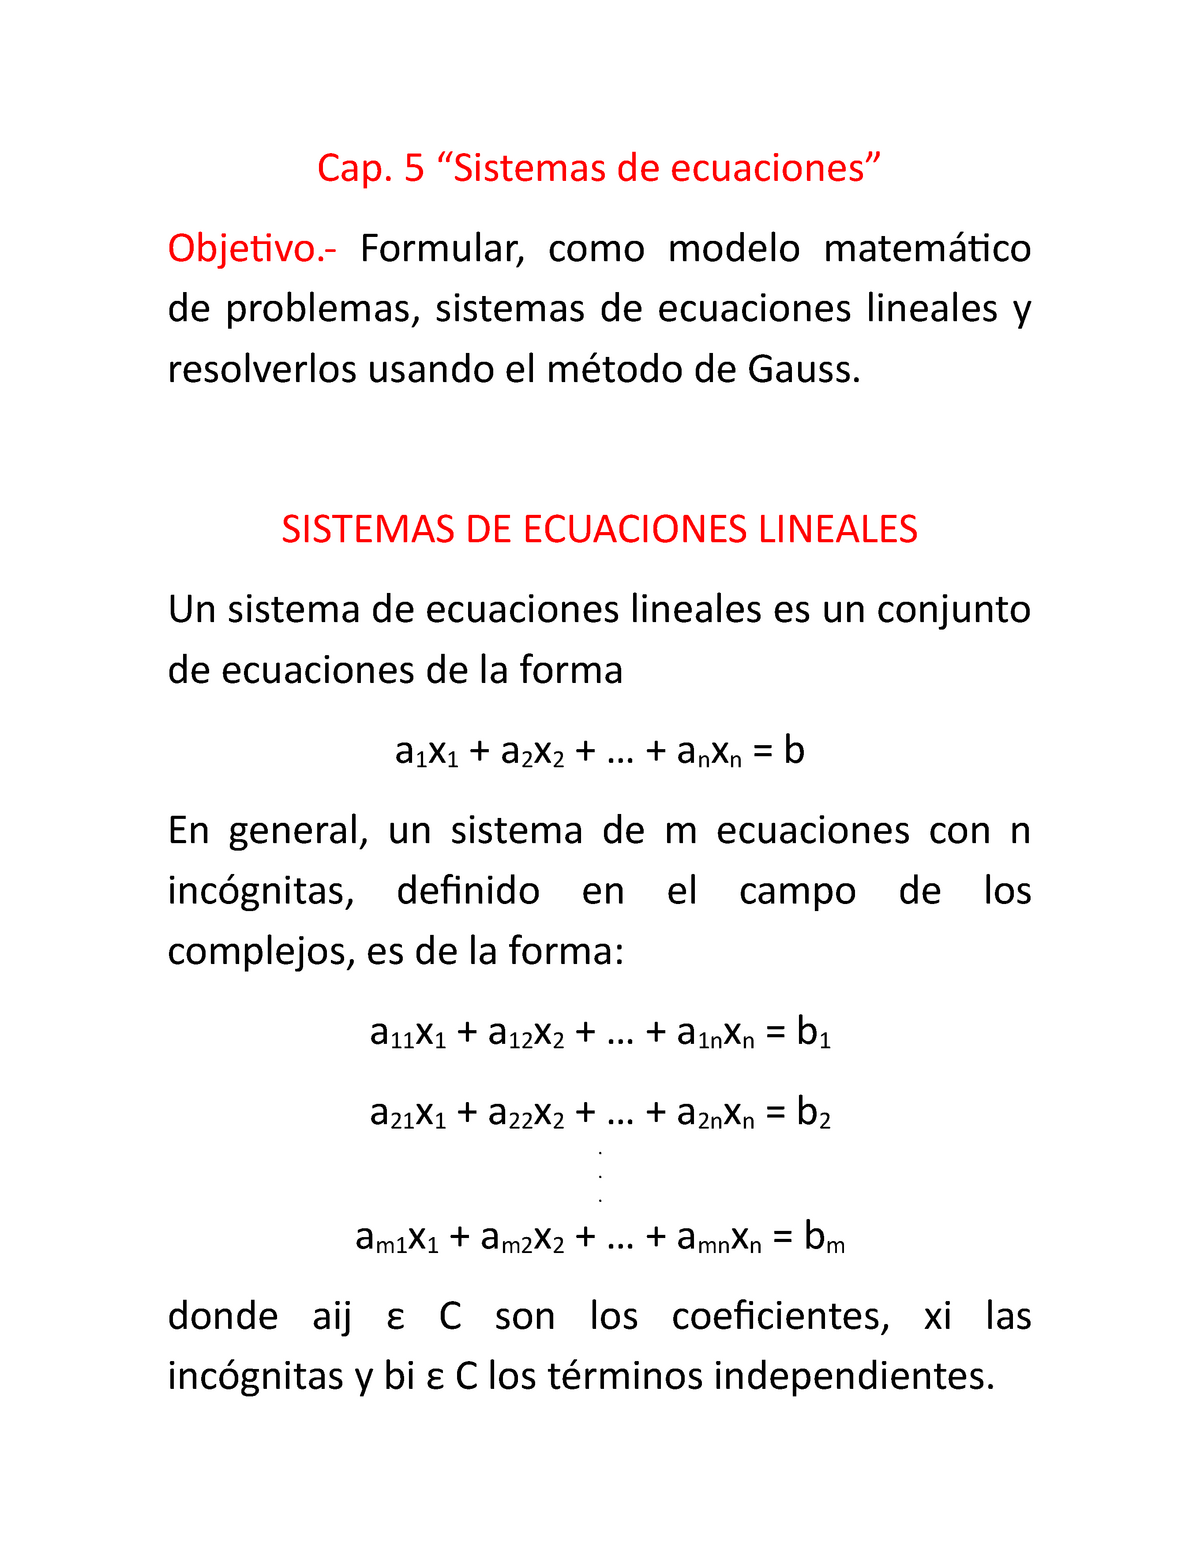 Cap. 5 Sistemas de ecuaciones lineales - Cap. 5 “Sistemas de ecuaciones”   Formular, como - Studocu